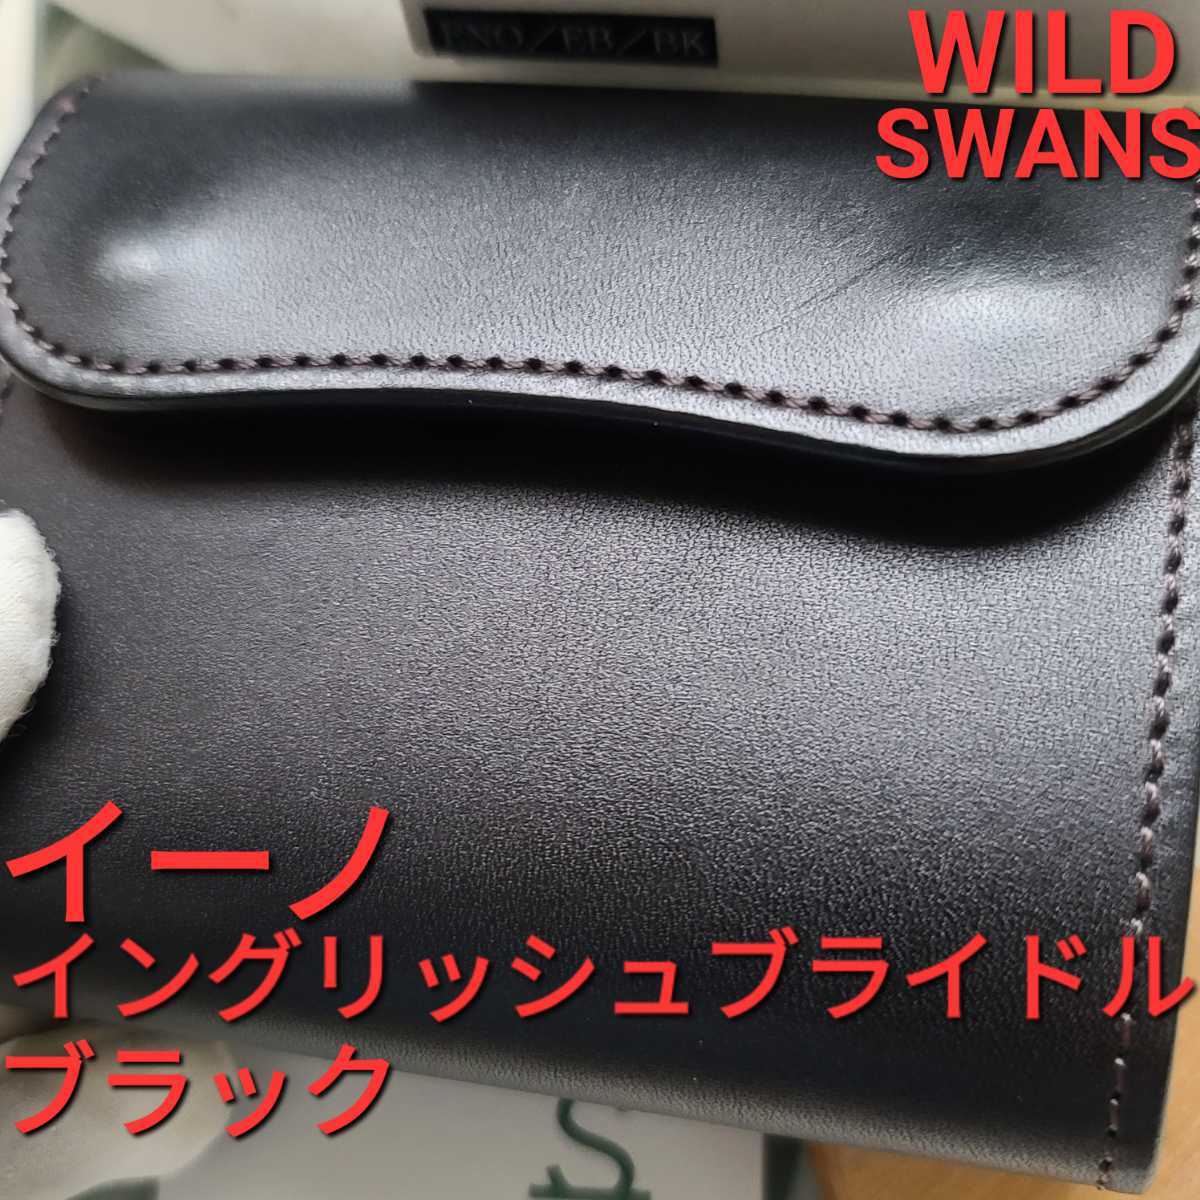 【保存版】 WILDSWANS ENO イングリッシュブライドル asakusa.sub.jp